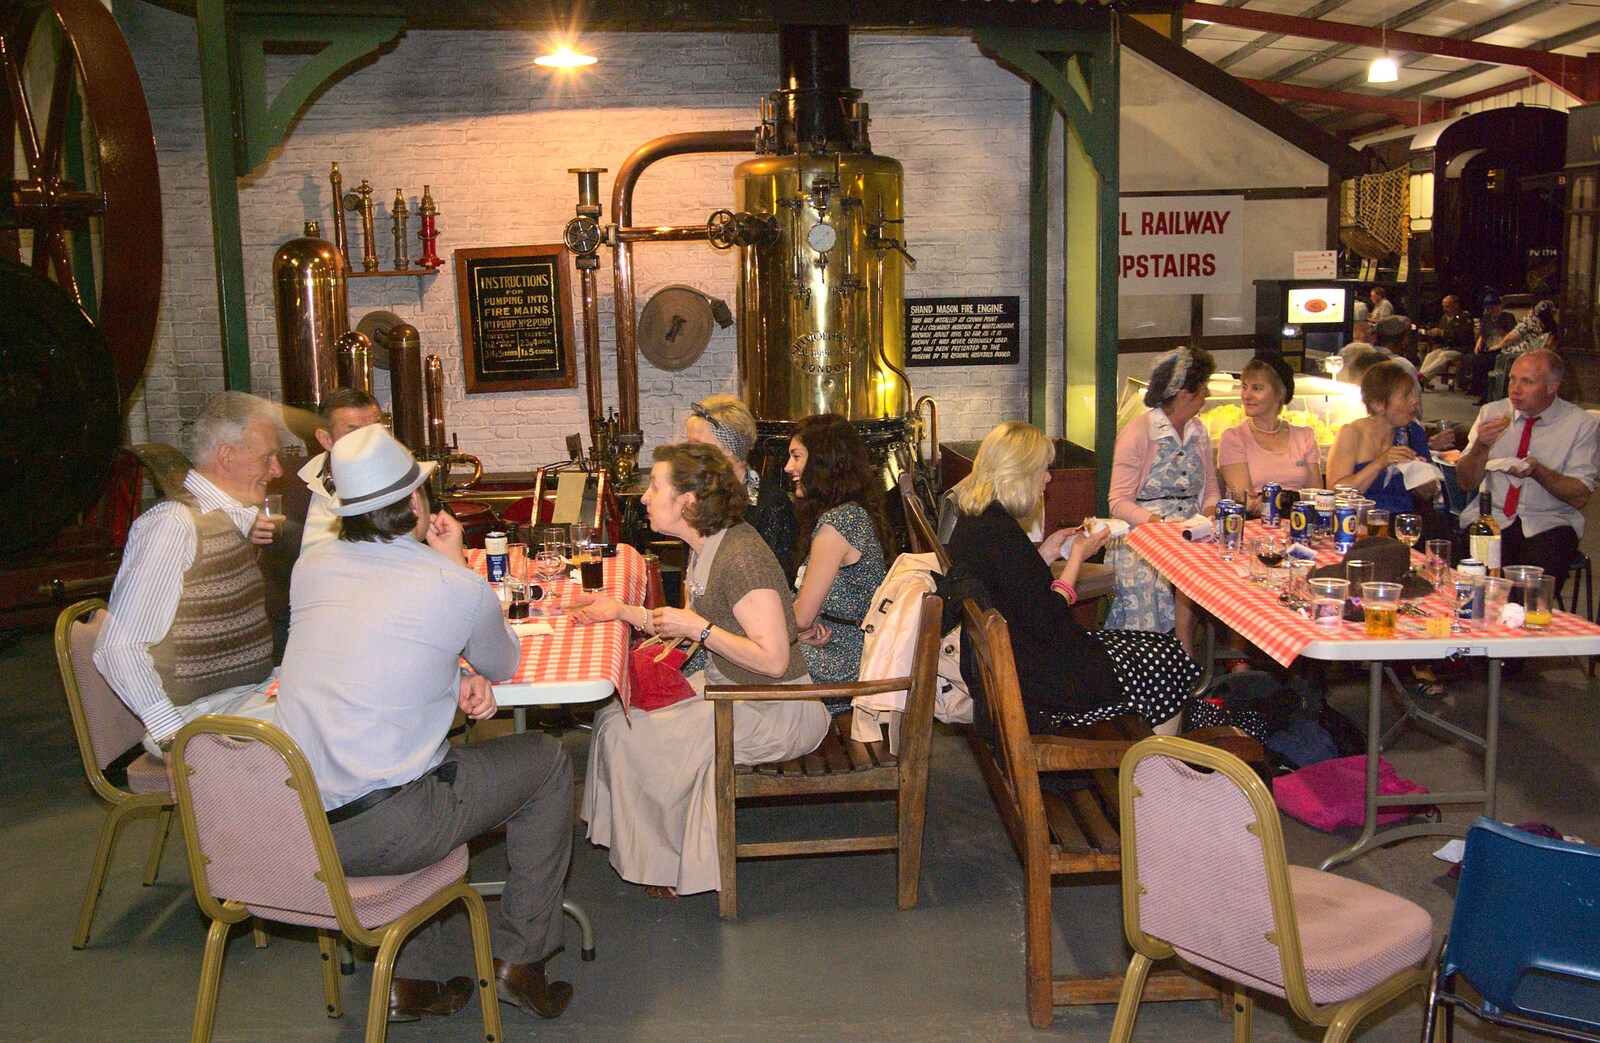 The Bressingham Blitz 1940s Dance, Bressingham Steam Museum, Norfolk - 21st May 2010: Inside the Bressingham Steam Museum